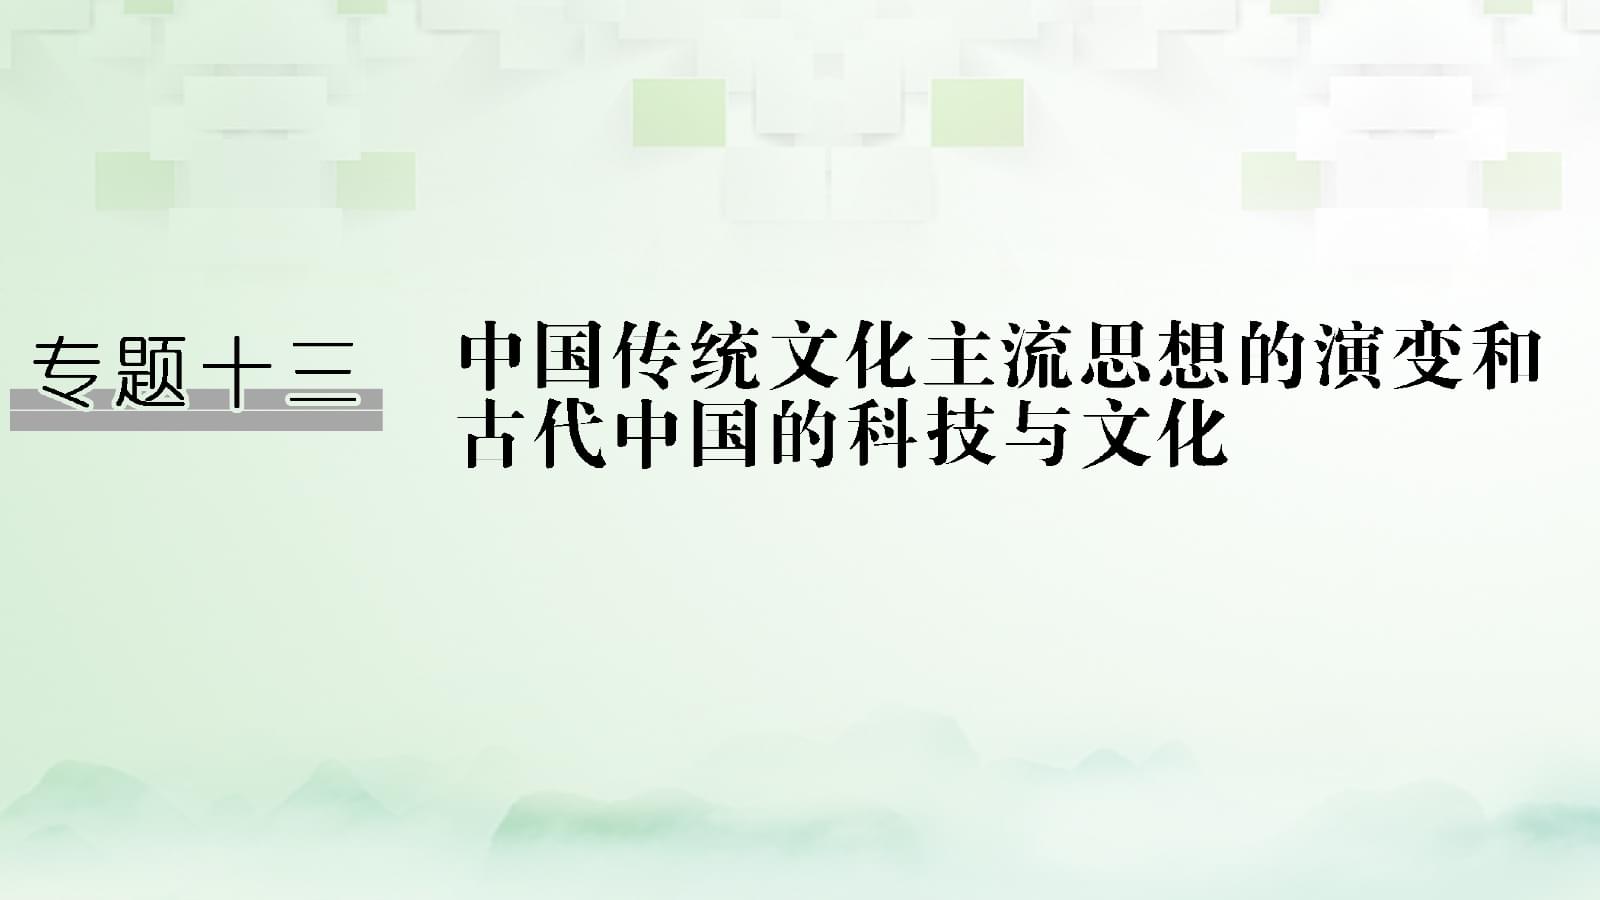 文档介绍：儒家文化对中国科技发展的影响